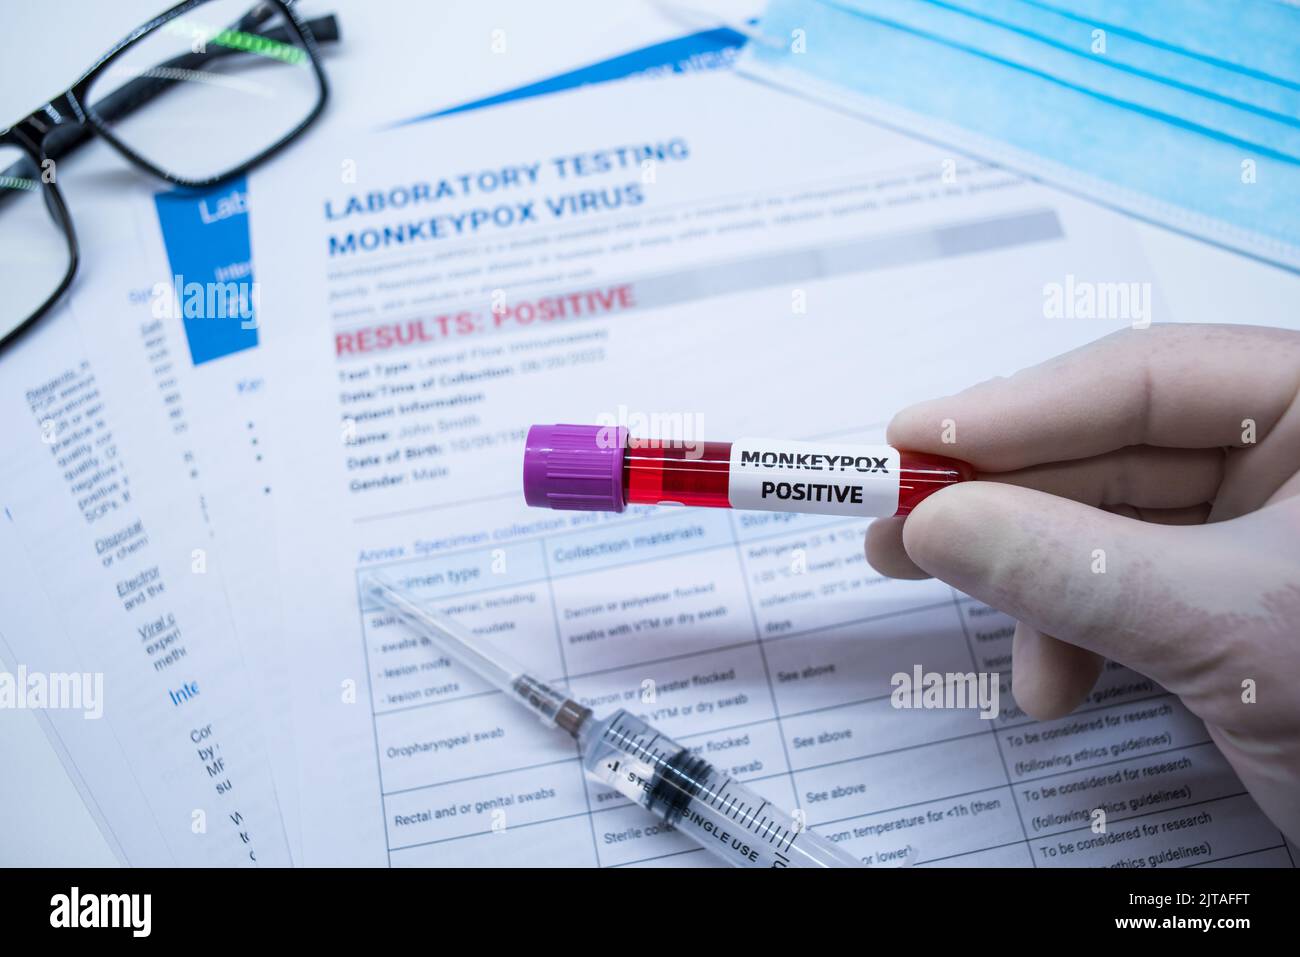 Les tubes de prélèvement sanguin et la fiche technique sur les résultats positifs des tests de la variole du singe en laboratoire Banque D'Images